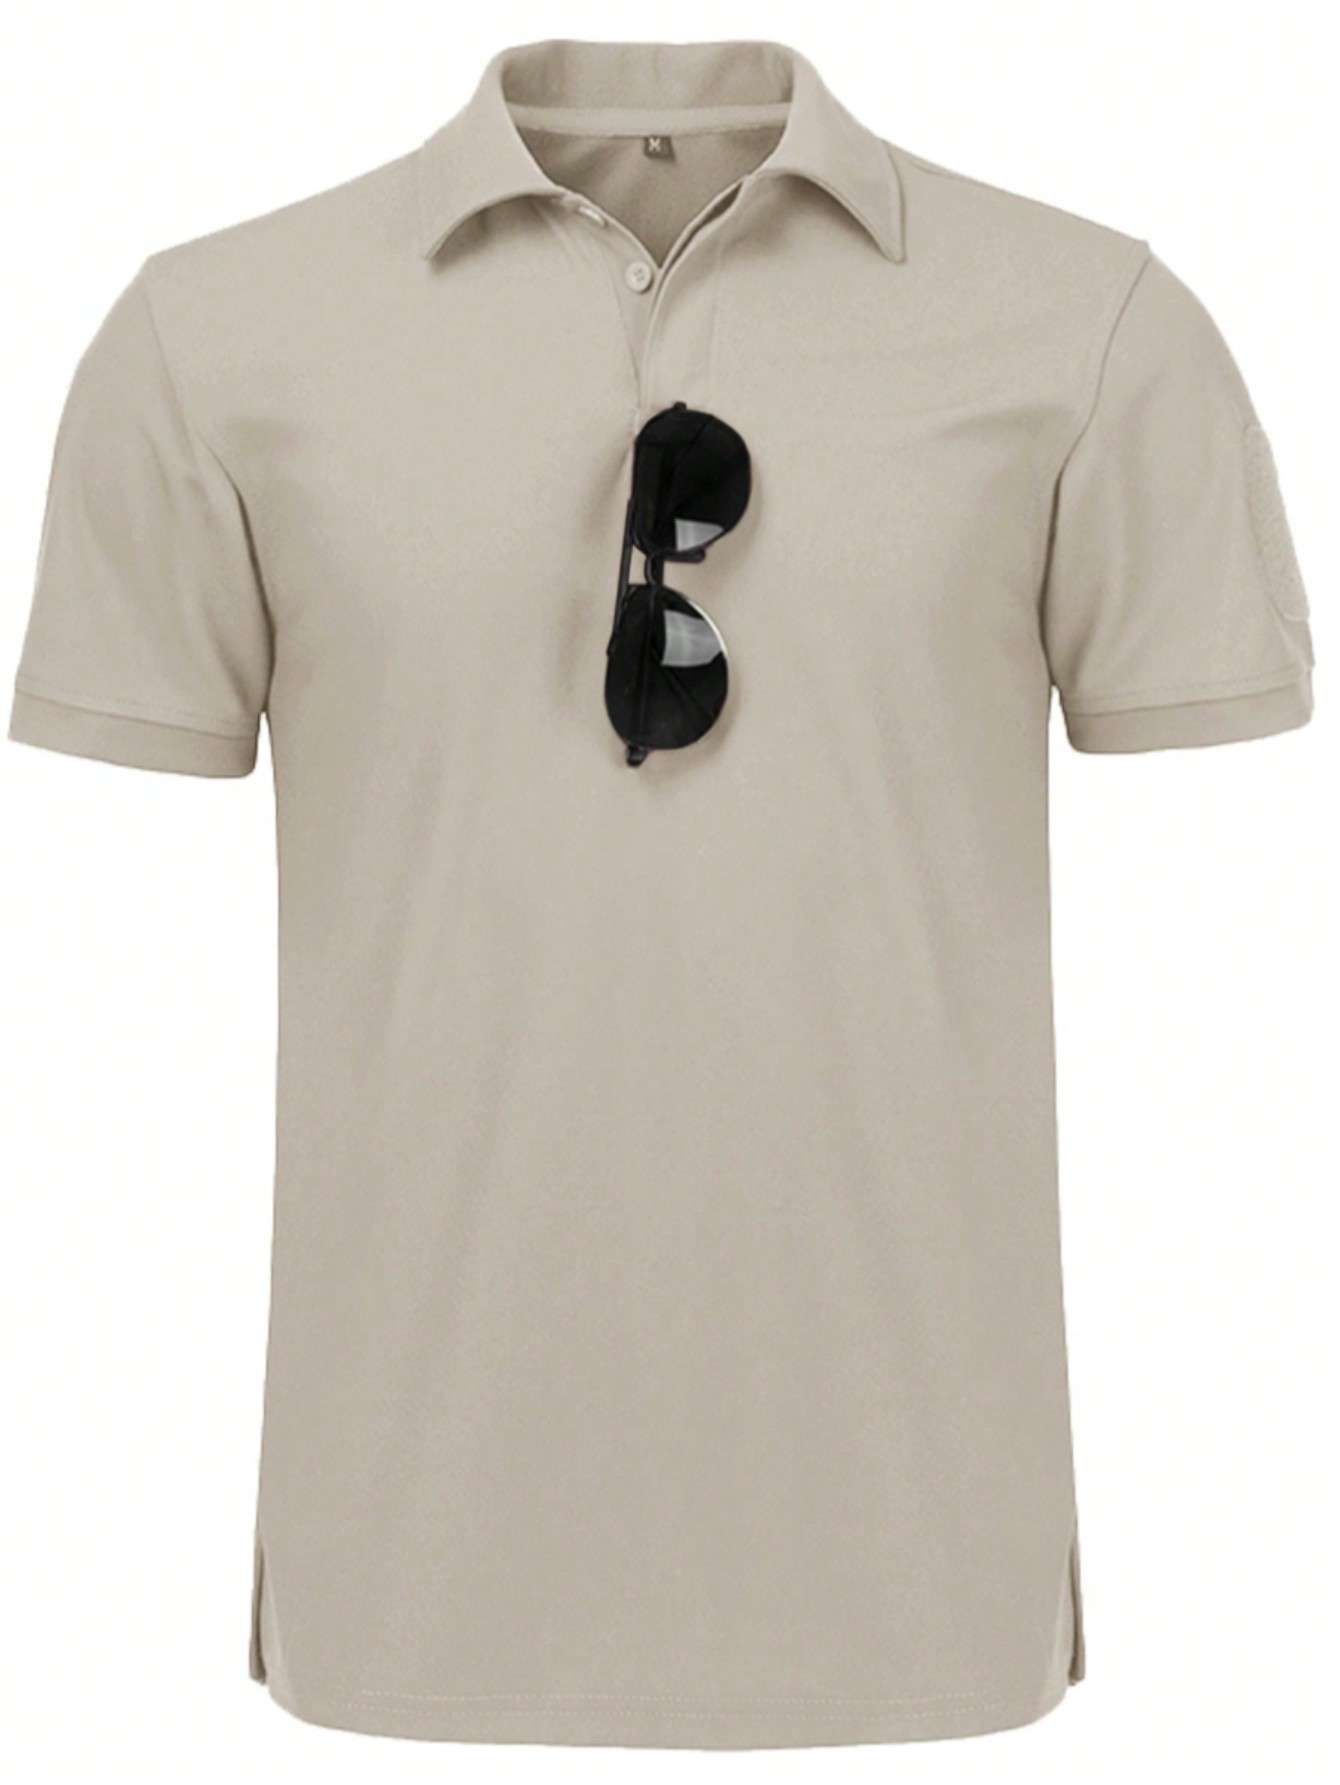 Мужская рубашка поло с коротким рукавом для отдыха, бежевый футболка поло мужская быстросохнущая дышащая тенниска для гольфа модная майка с коротким рукавом лето